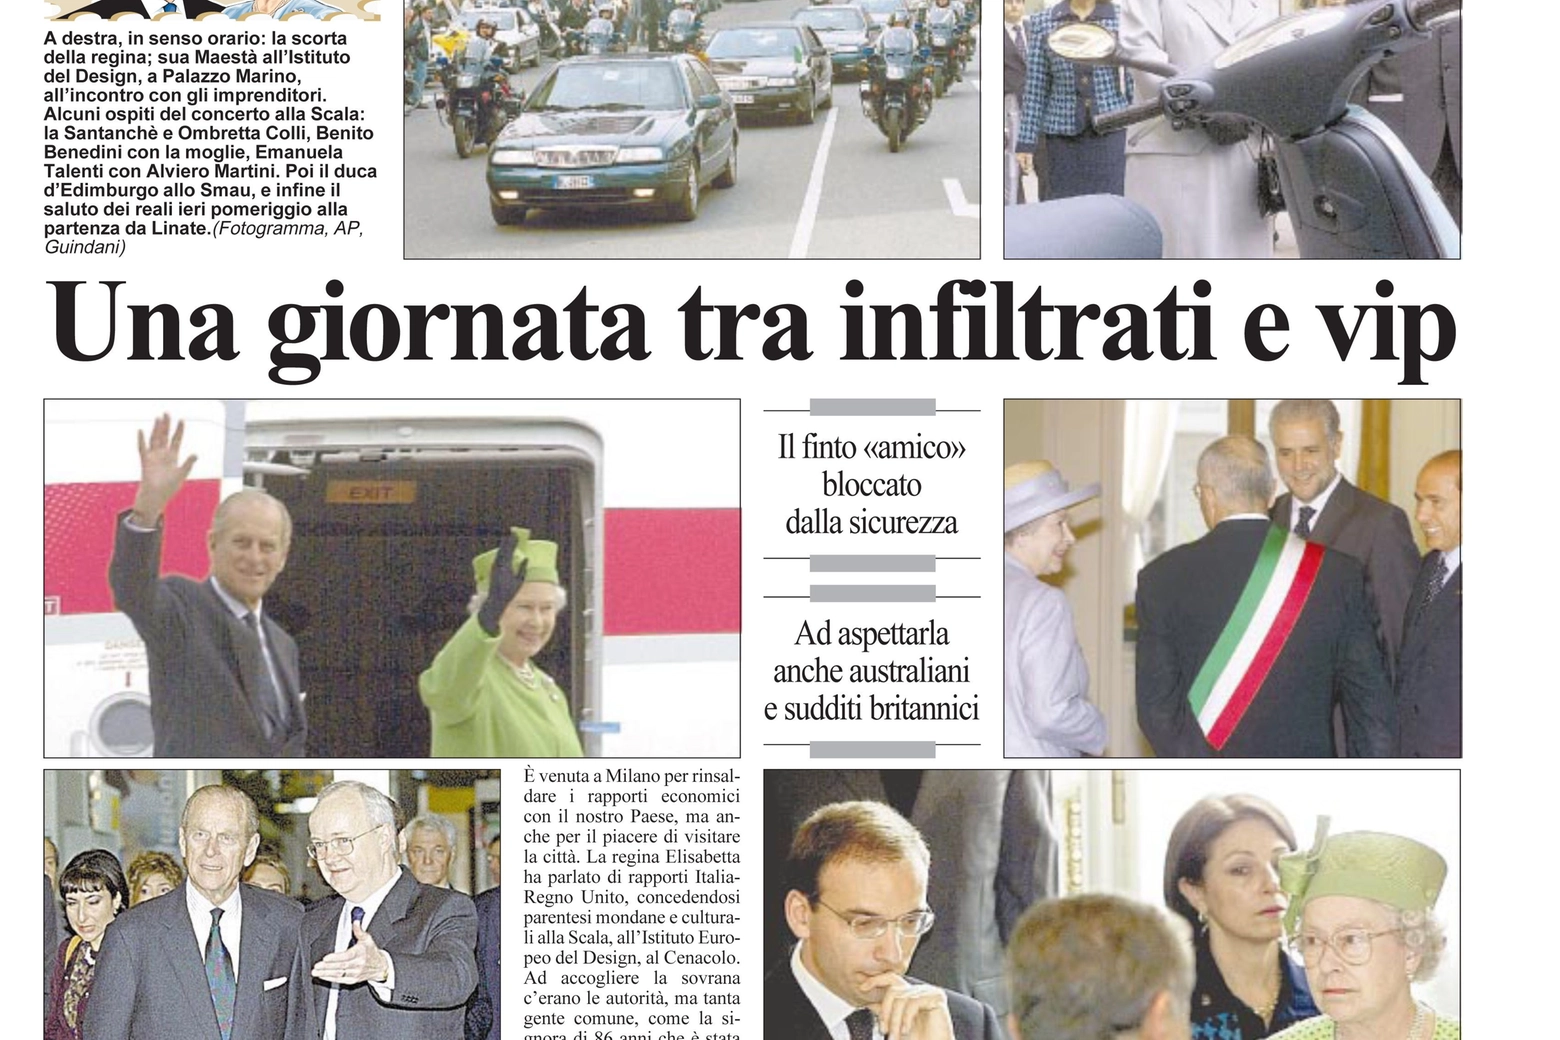 La visita della Regina a Milano nella pagine del Giorno